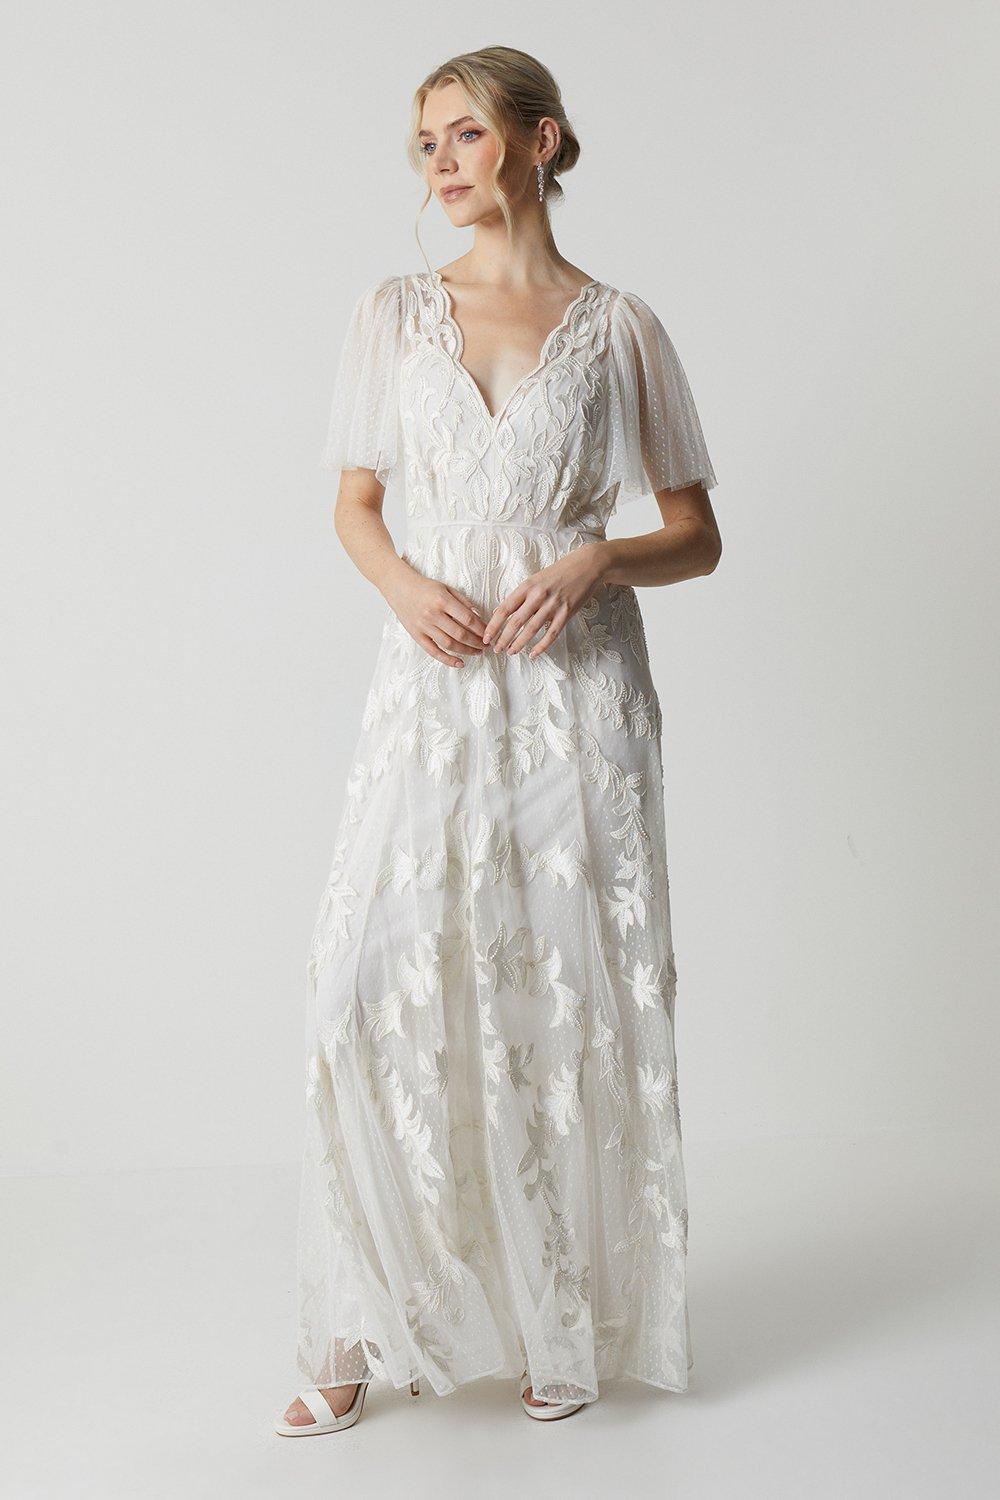 Premium Lace Overlay Embellished Wedding Dress - Ivory